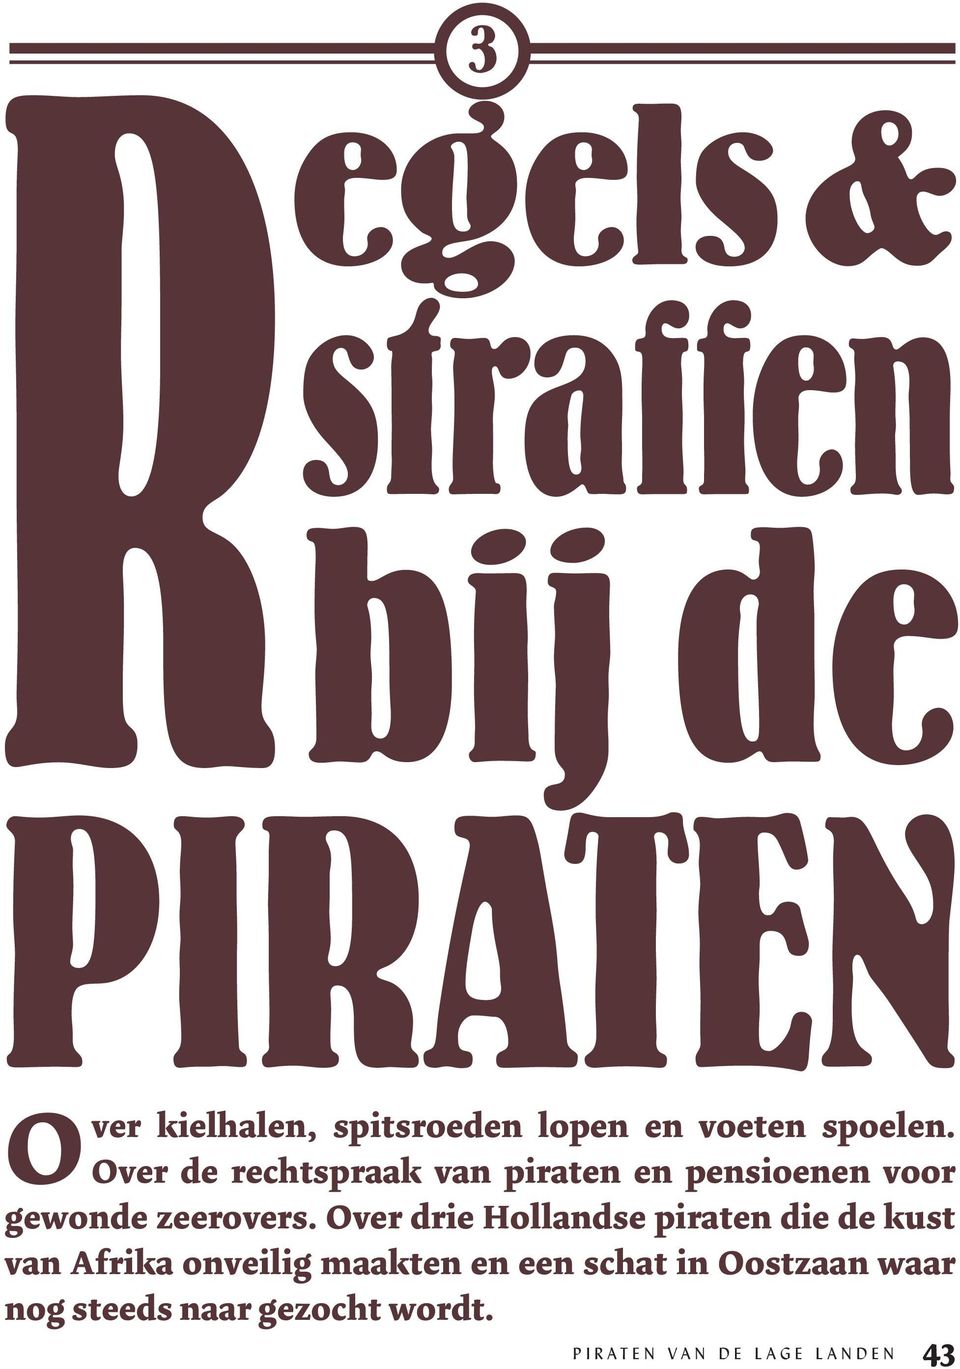 Over drie Hollandse piraten die de kust van Afrika onveilig maakten en een schat in